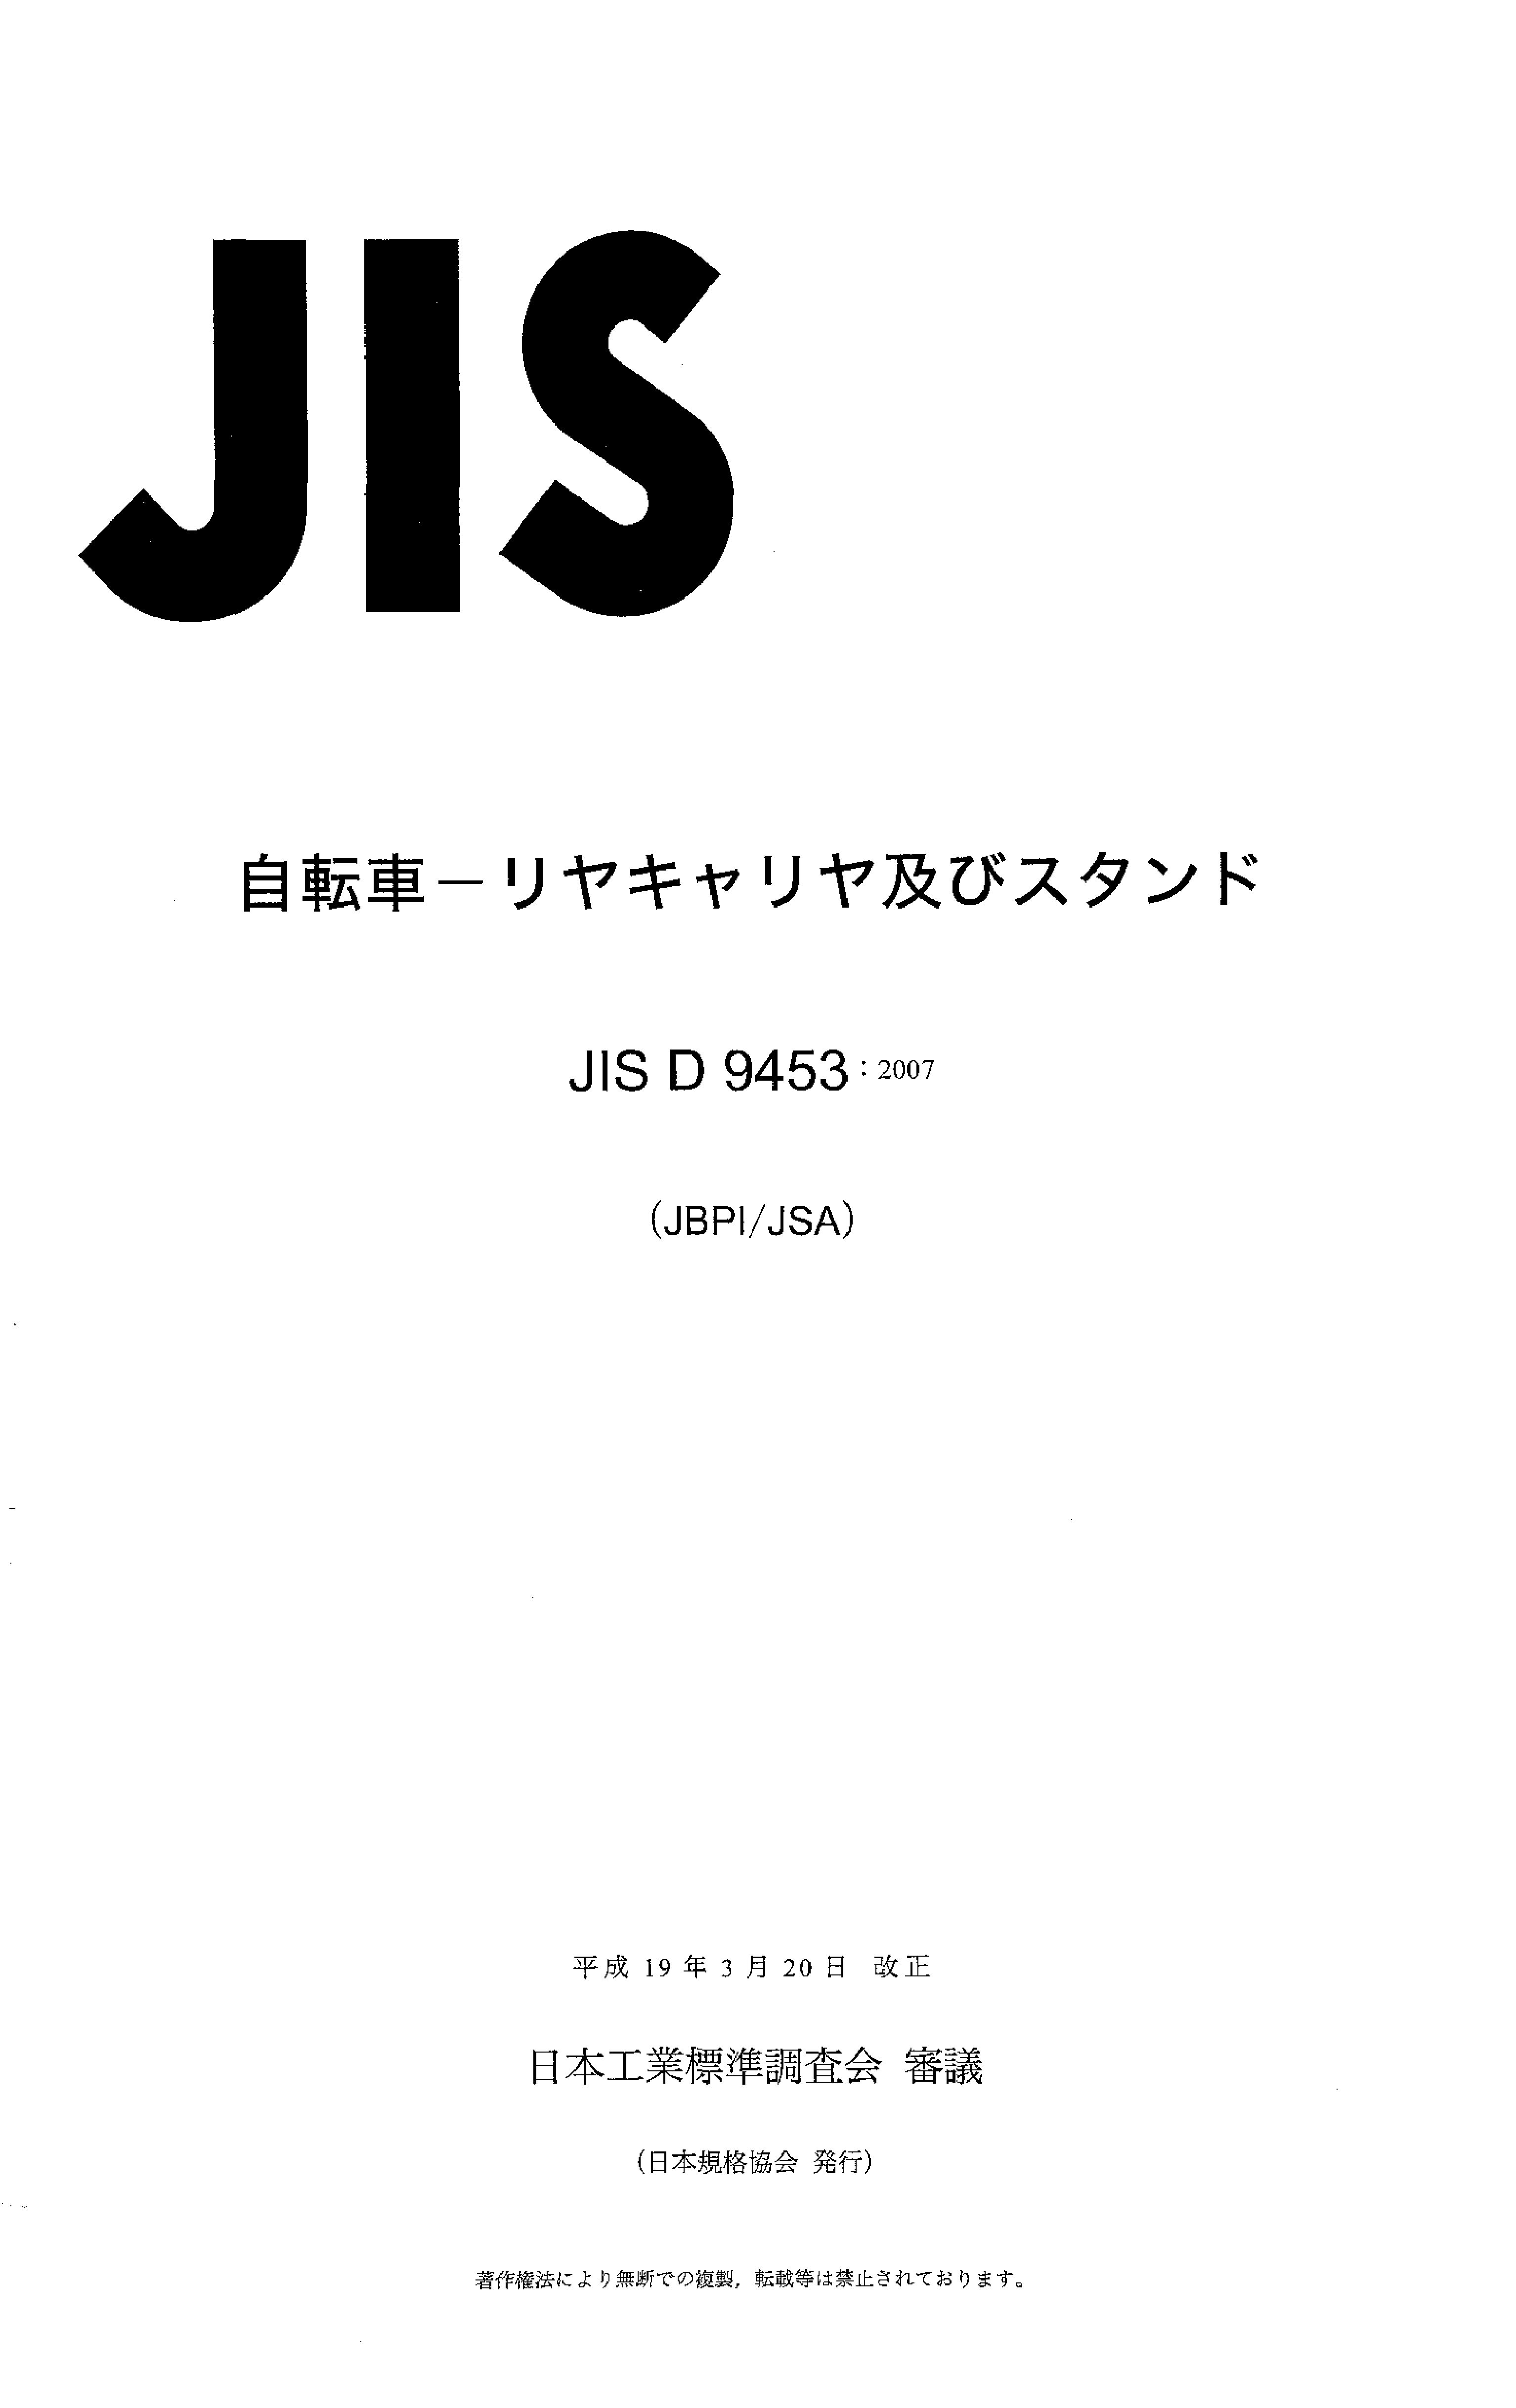 JIS D 9453:2007封面图